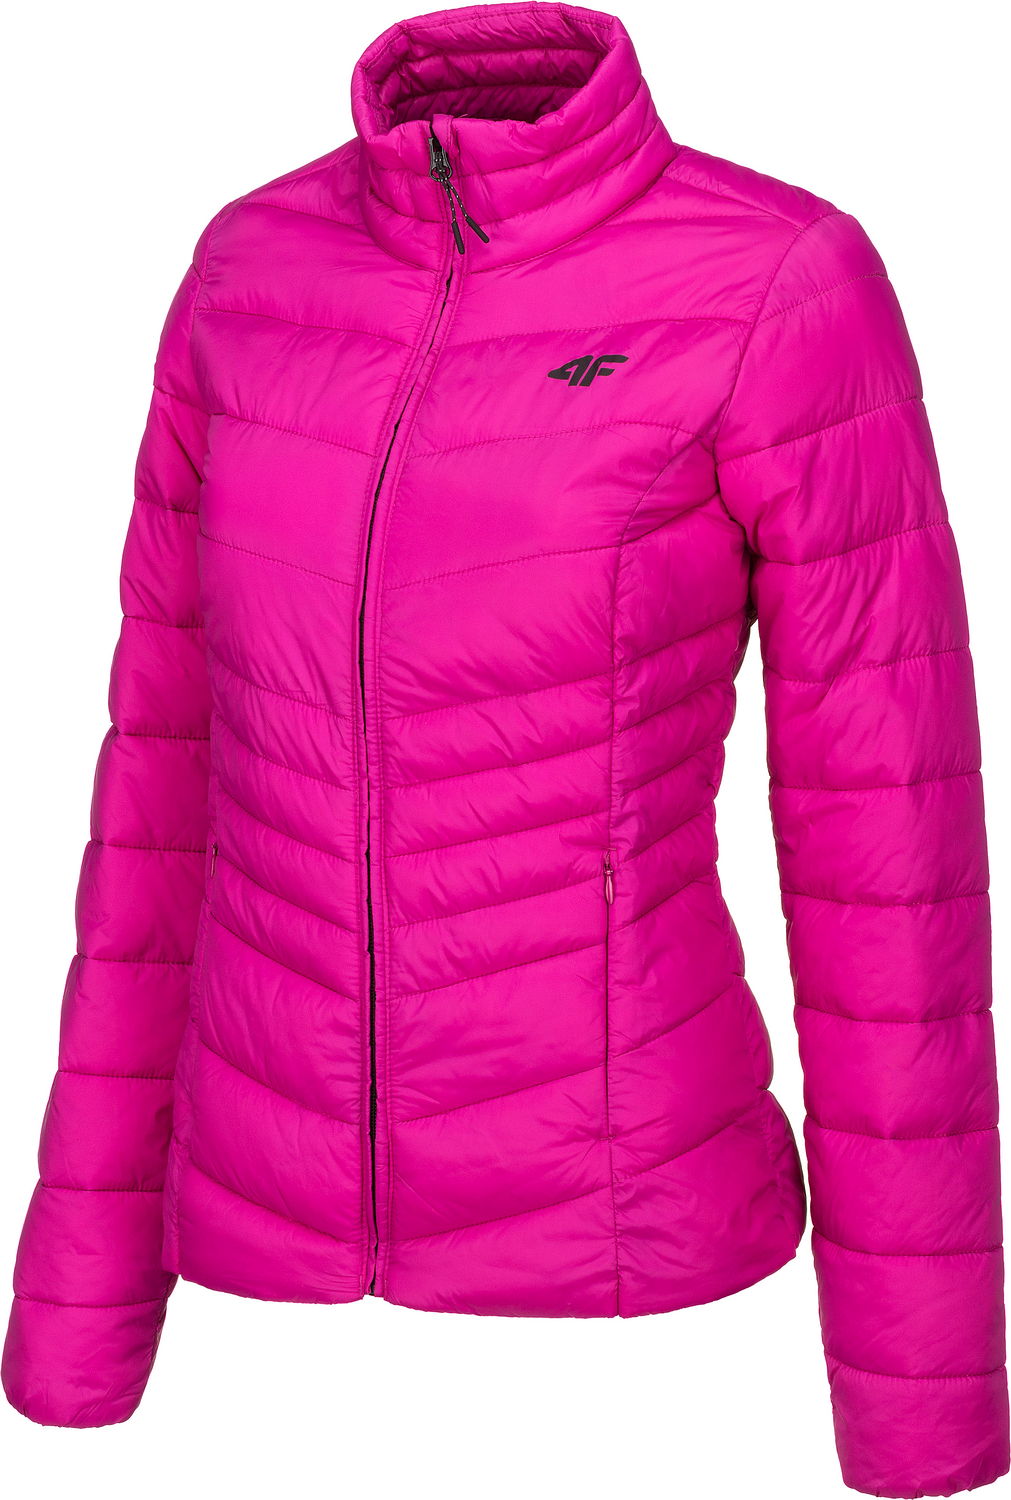 фото Спортивная куртка женская 4f women's jackets розовая xs